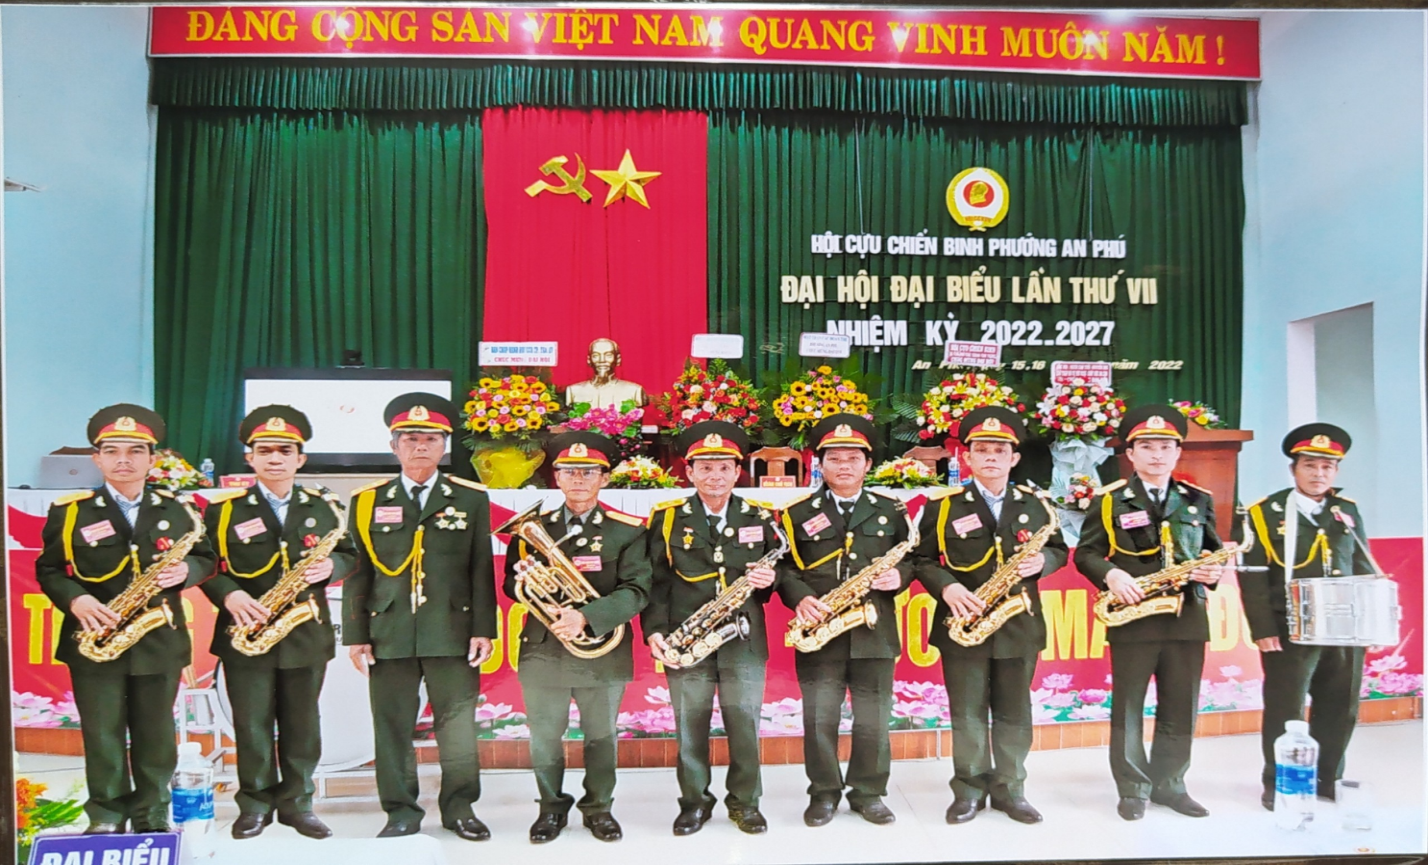 Đội kèn Tây CCB phường An Phú, thành phố Tam Kỳ phục vụ tại Đại Hội CCB phường lần thứ VII Đ c Nguyễn Hữu Chiến đứng giữa